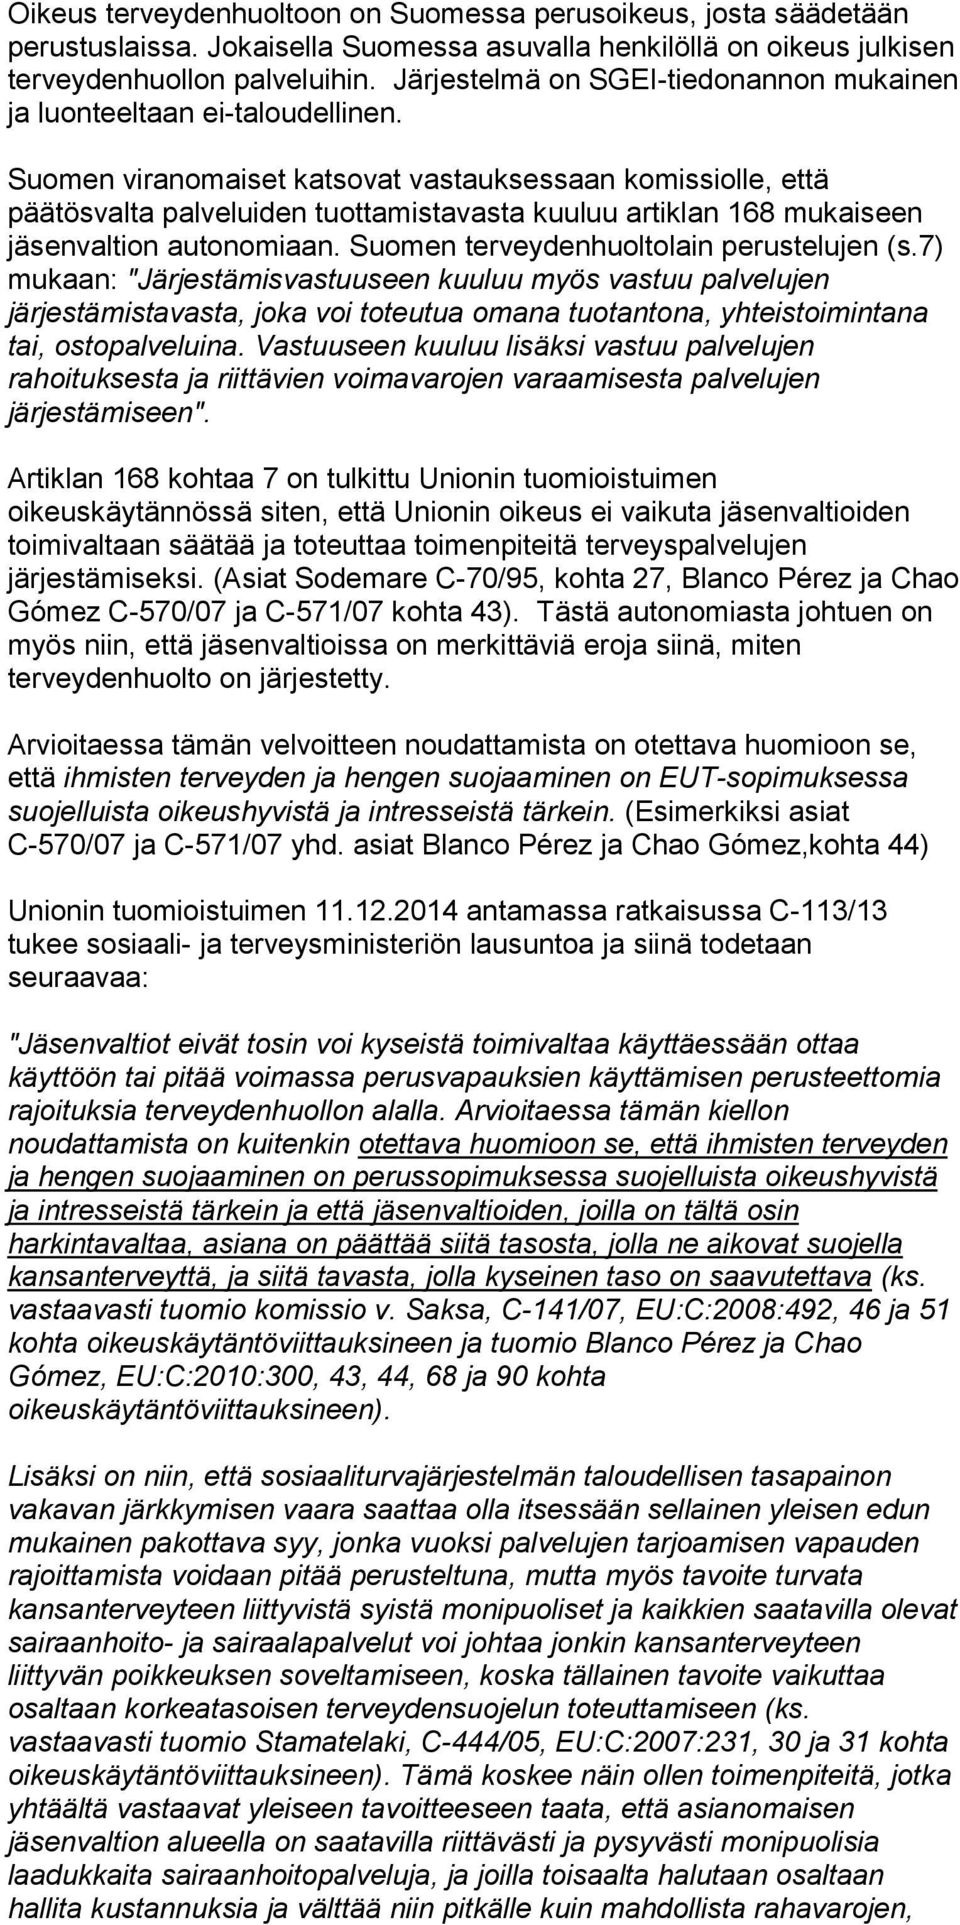 Suomen viranomaiset katsovat vastauksessaan komissiolle, että päätösvalta palveluiden tuottamistavasta kuuluu artiklan 168 mukaiseen jäsenvaltion autonomiaan.